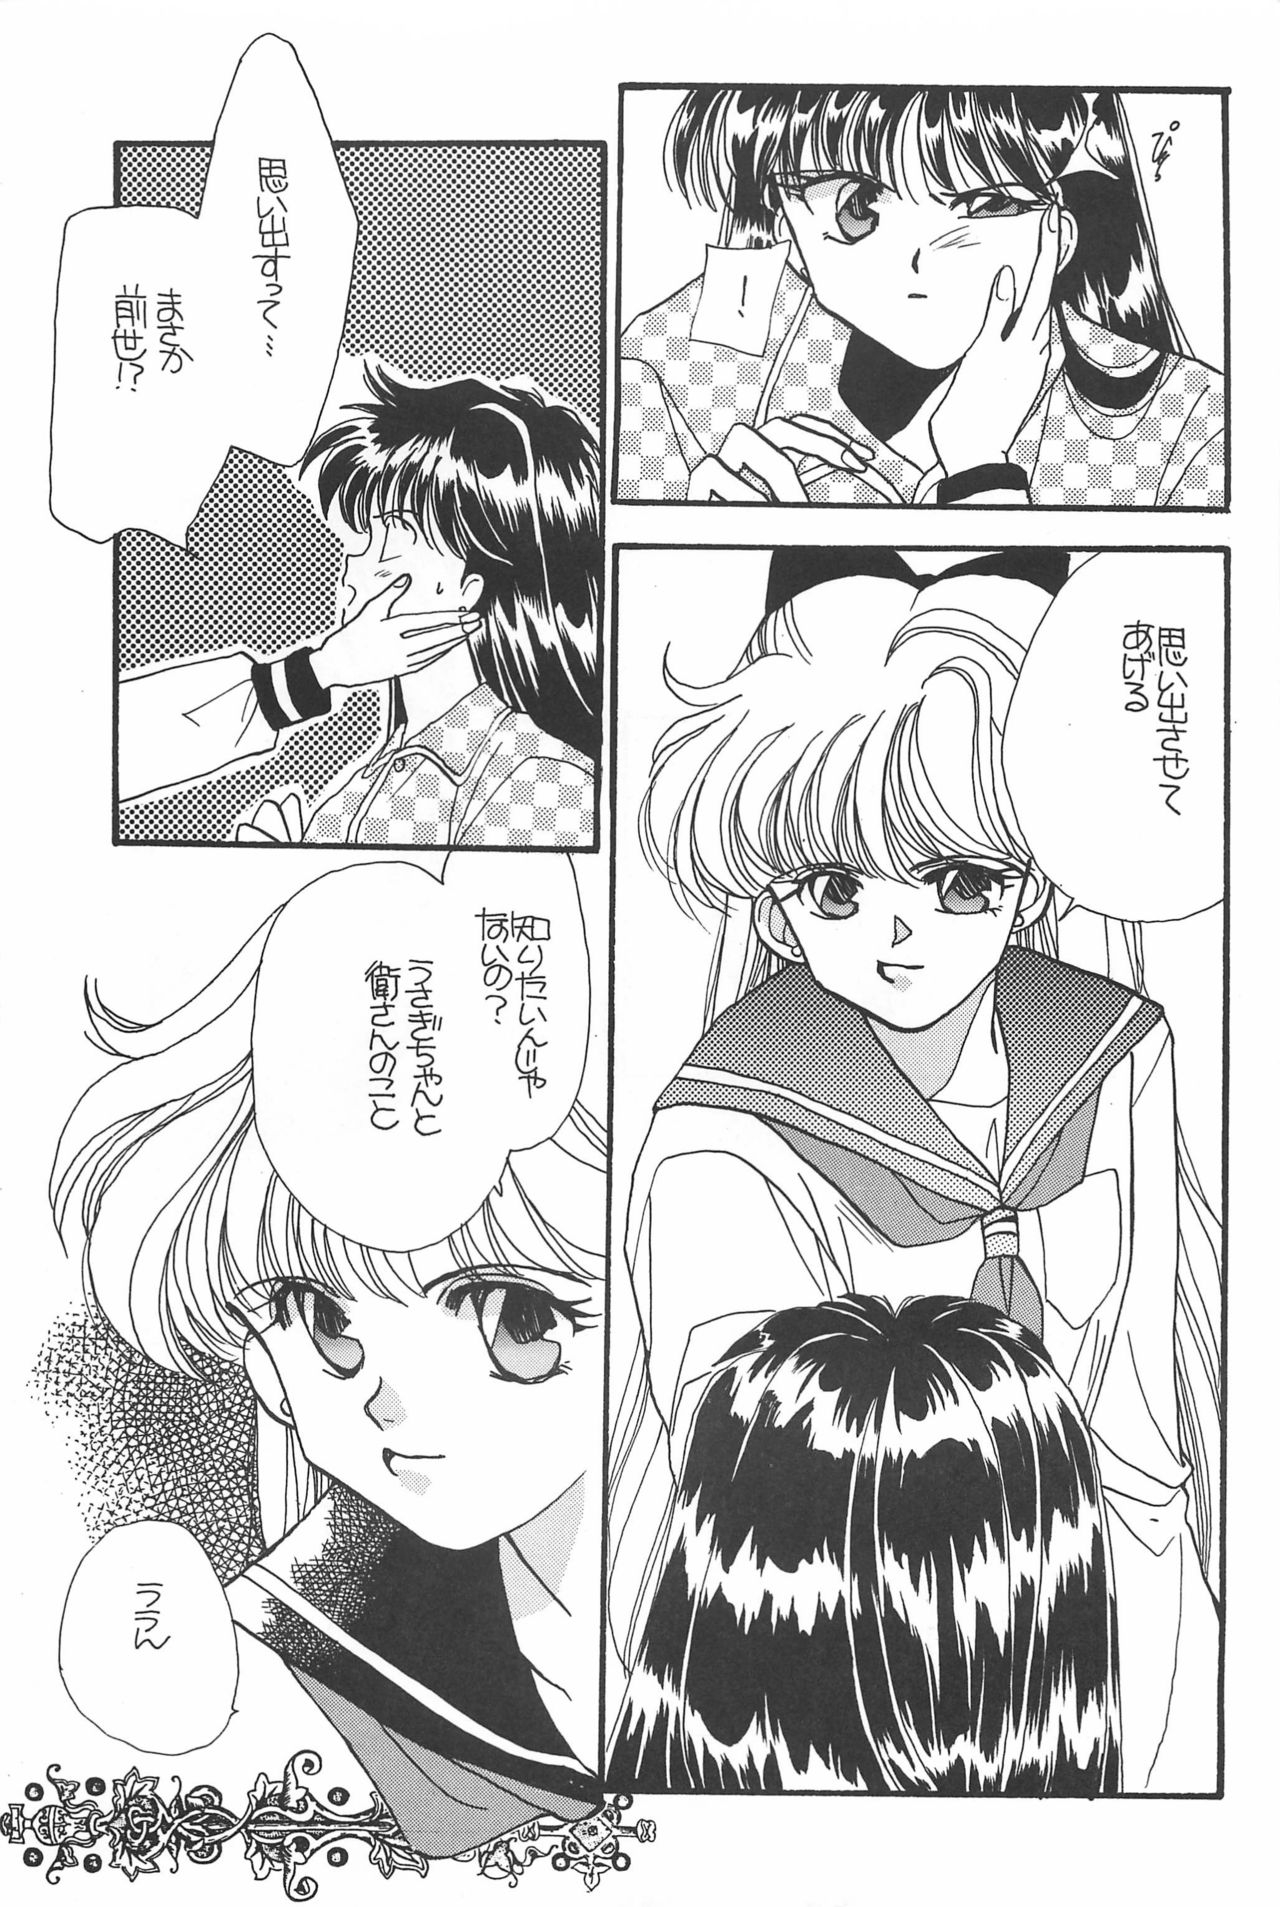 [Hello World (Muttri Moony)] Kaze no You ni Yume no You ni - Sailor Moon Collection (Sailor Moon) 128